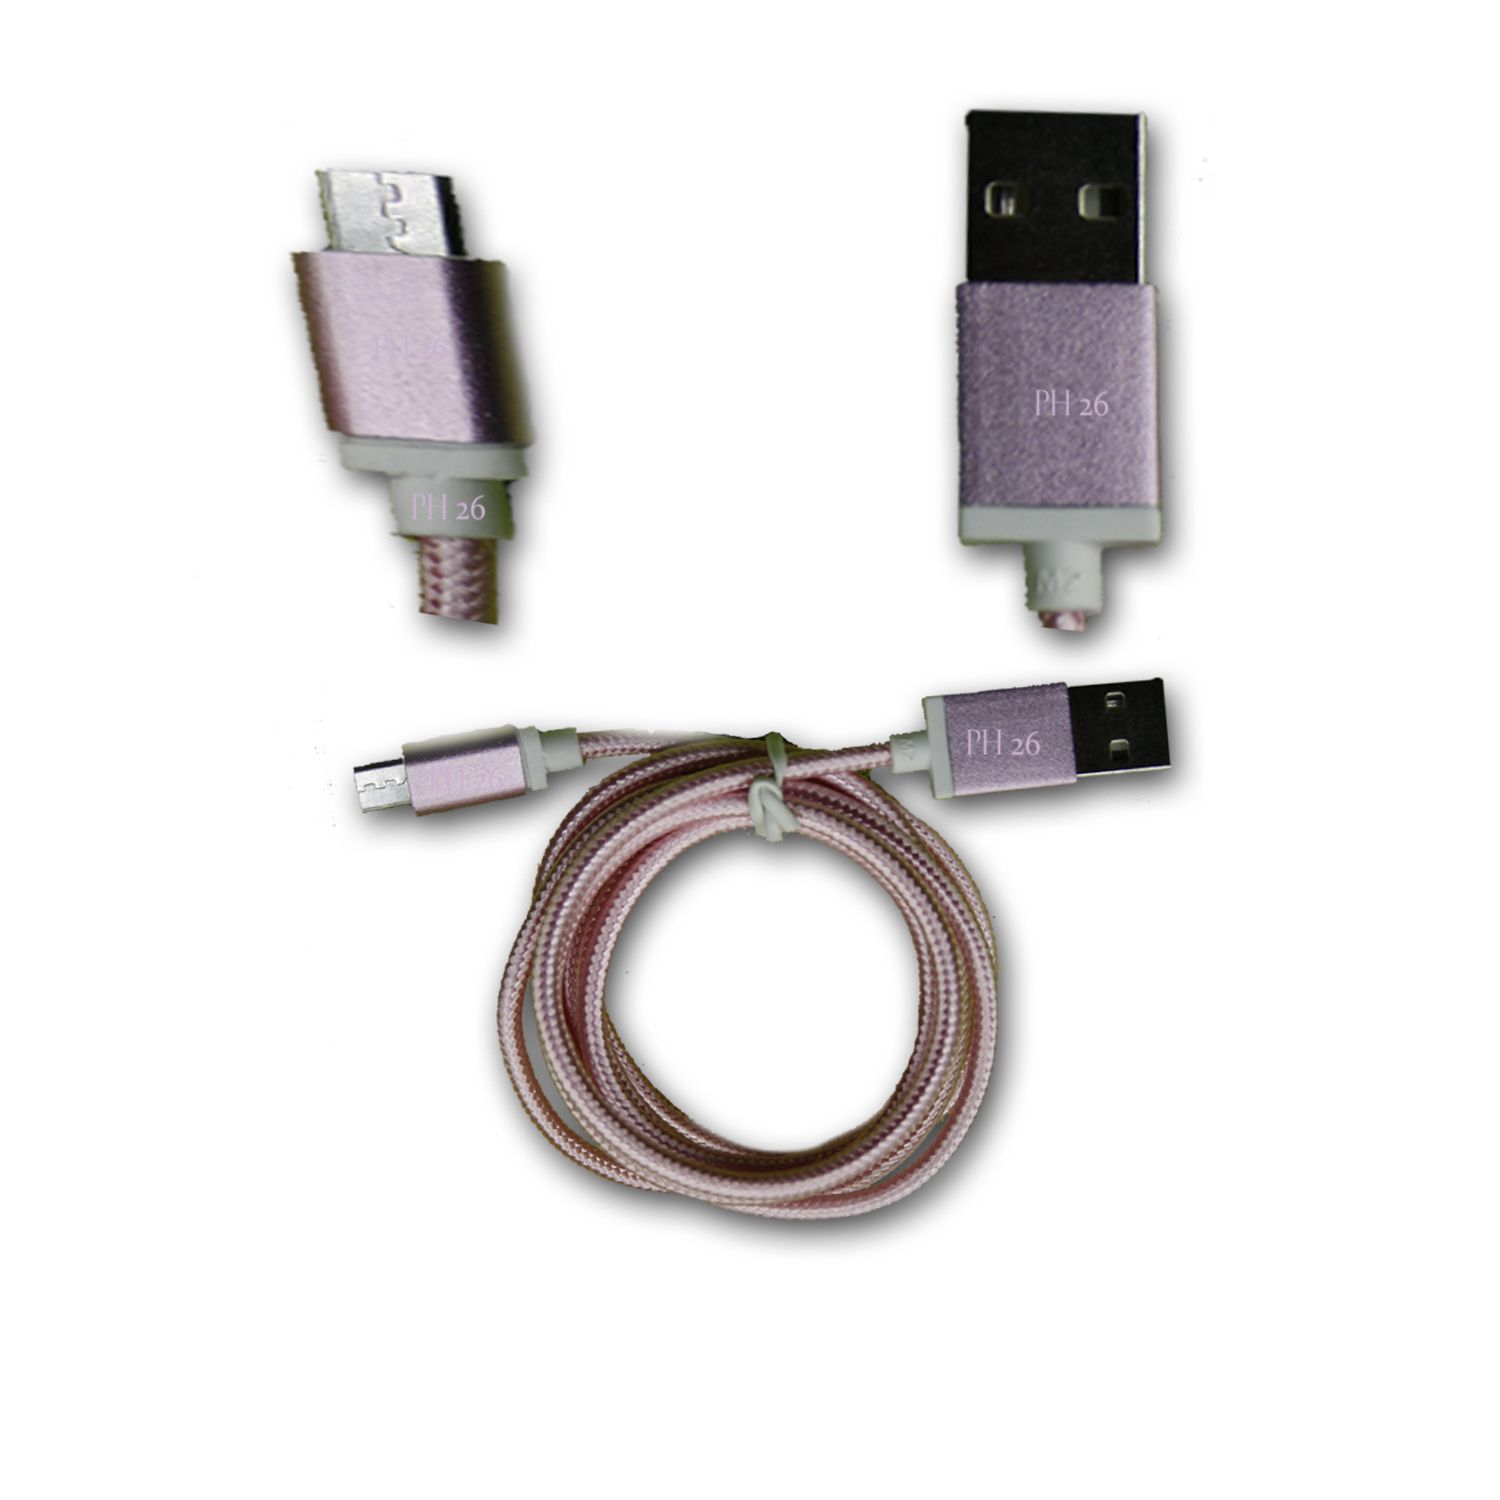 Samsung E2550 Câble Data ROSE 1M en nylon tressé ultra Résistant (garantie 12 mois) Micro USB pour charge, synchronisation et transfert de données by PH26 ®